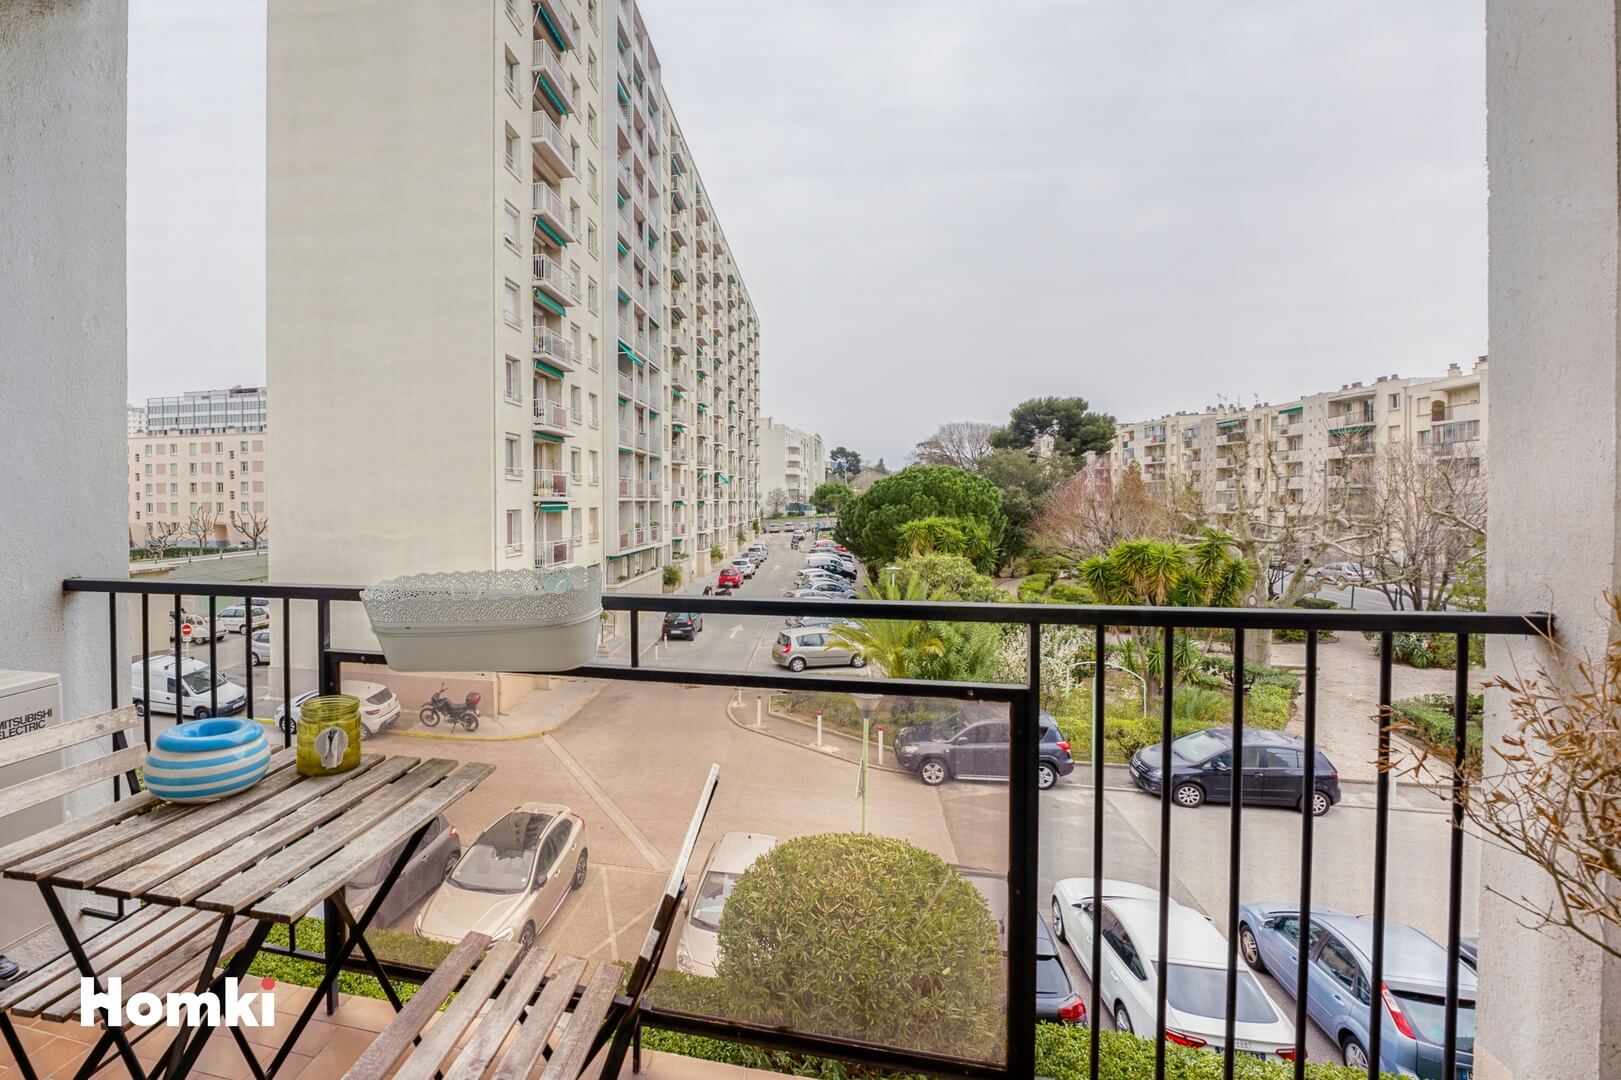 Homki - Vente Appartement  de 49.0 m² à Marseille 13009